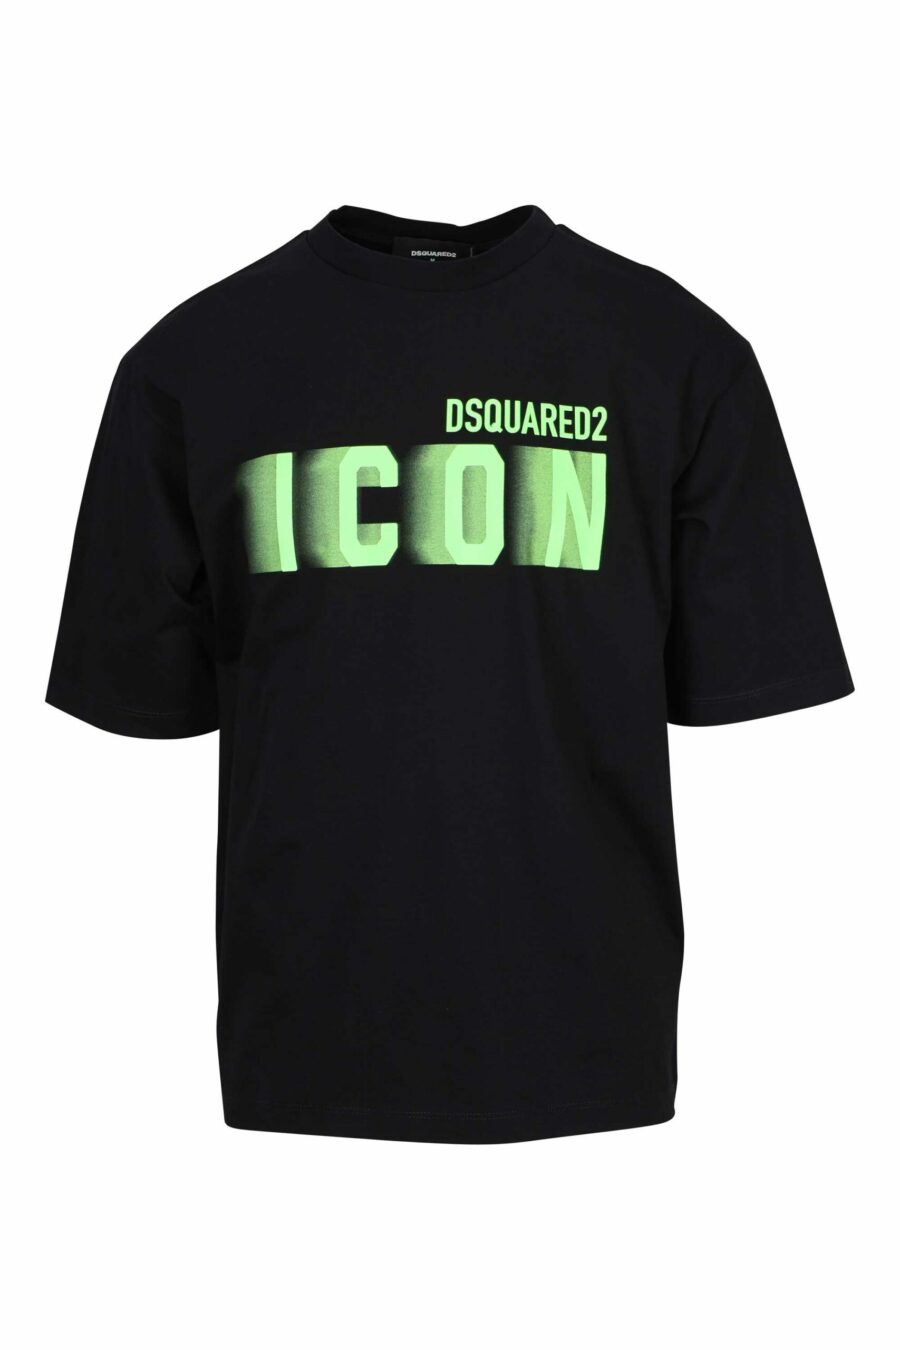 T-shirt preta de tamanho grande com o maxilogo "icon" esbatido a verde néon - 8054148359669 à escala